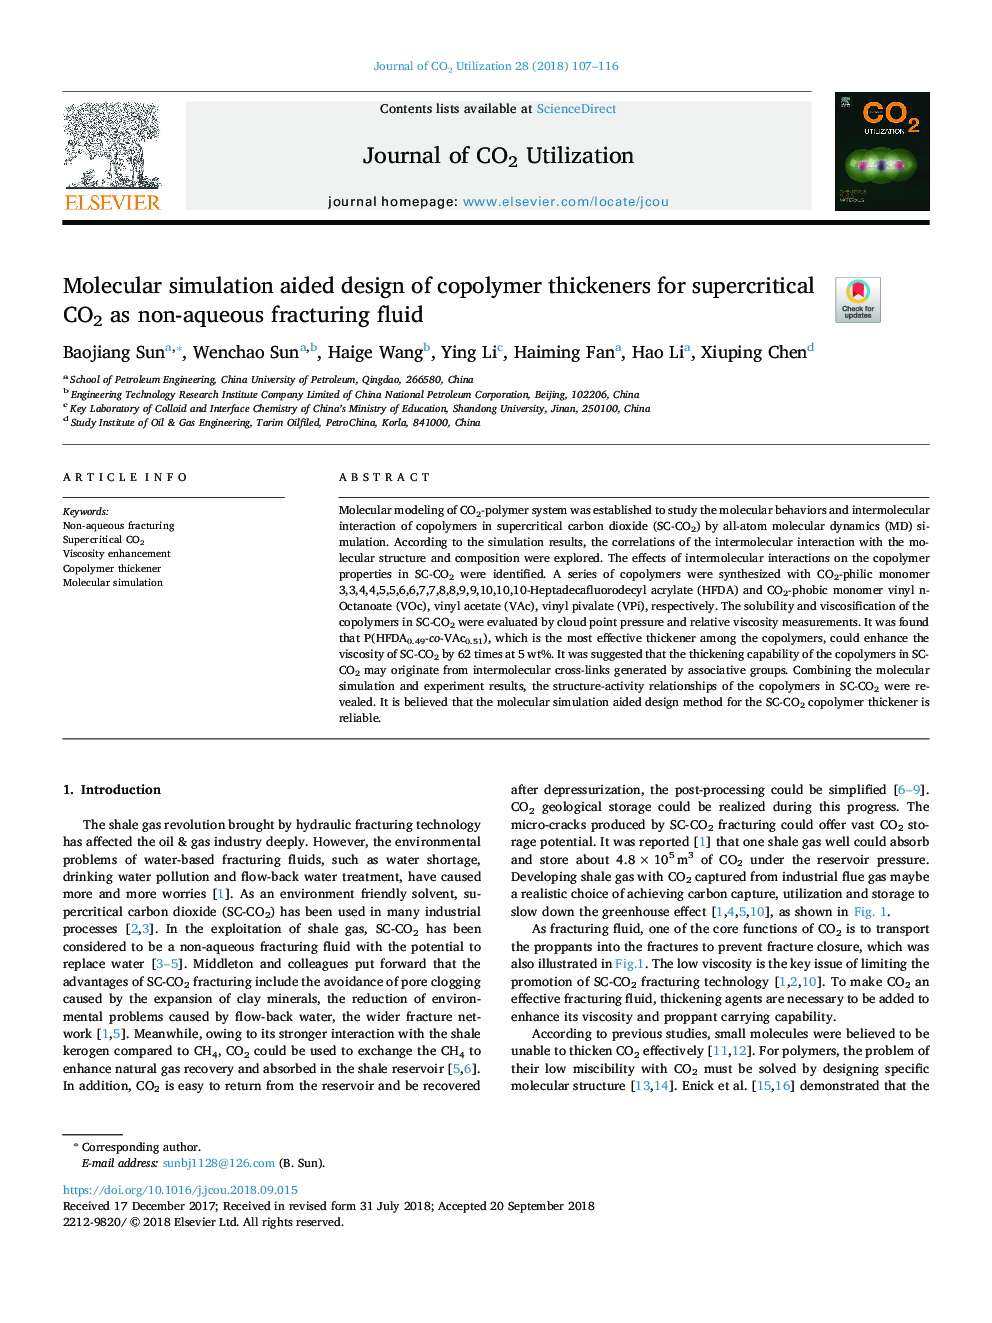 طراحی شبیه سازی مولکولی از ضخیم کننده های کوپلیمر برای کربن فوق بحرانی به عنوان مایع شکستگی غیر آبی